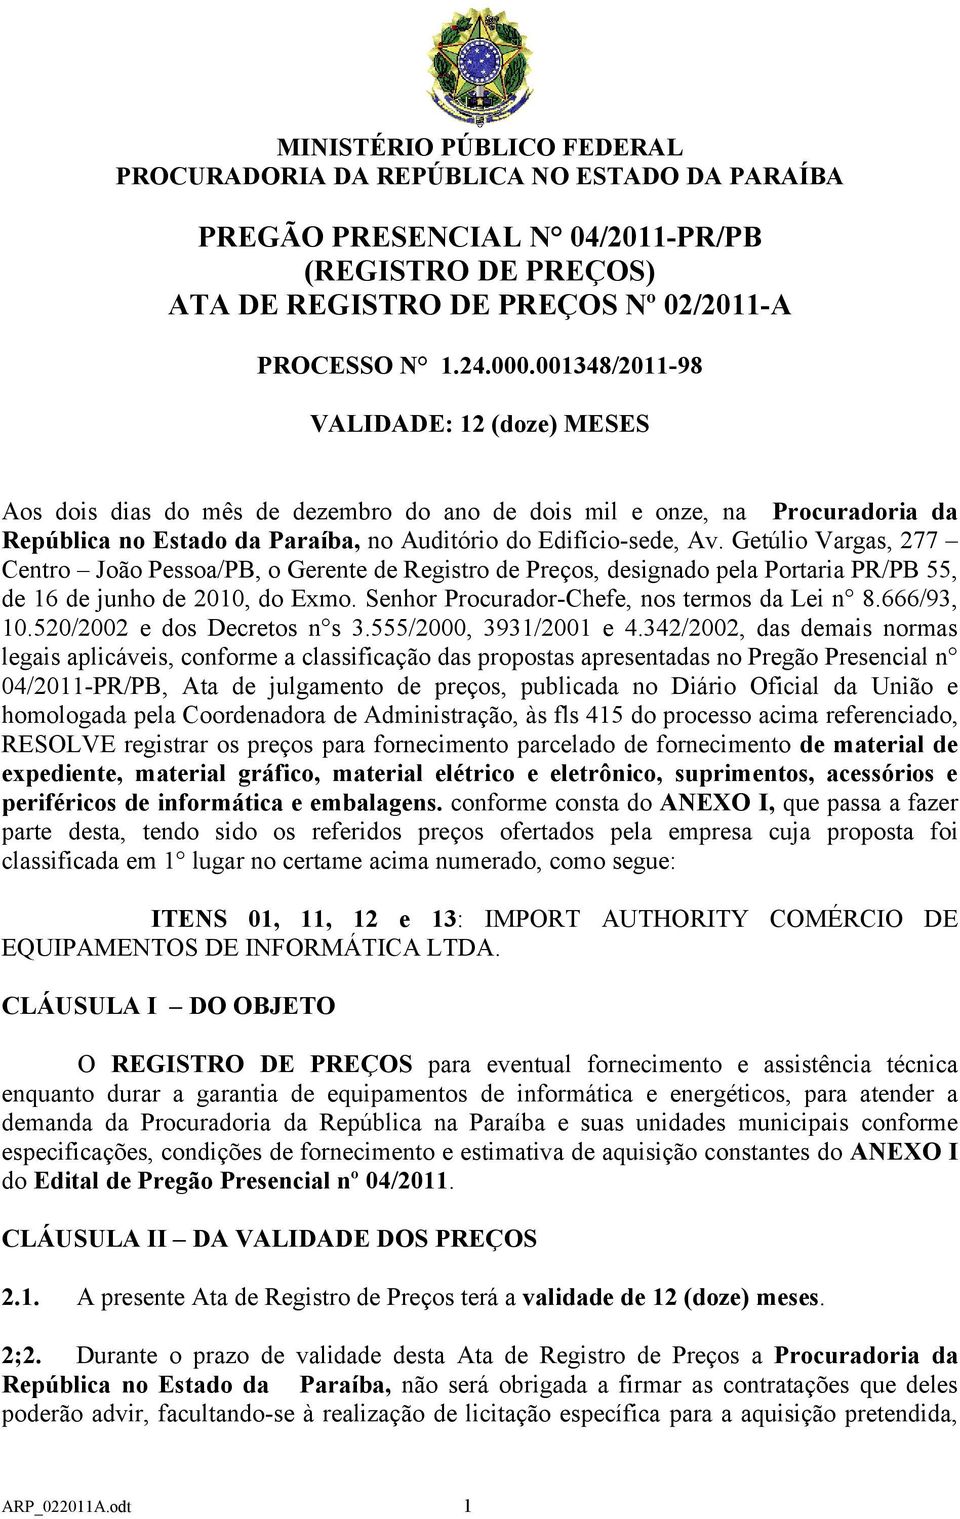 Getúlio Vargas, 277 Centro João Pessoa/PB, o Gerente de Registro de Preços, designado pela Portaria PR/PB 55, de 16 de junho de 2010, do Exmo. Senhor Procurador-Chefe, nos termos da Lei n 8.